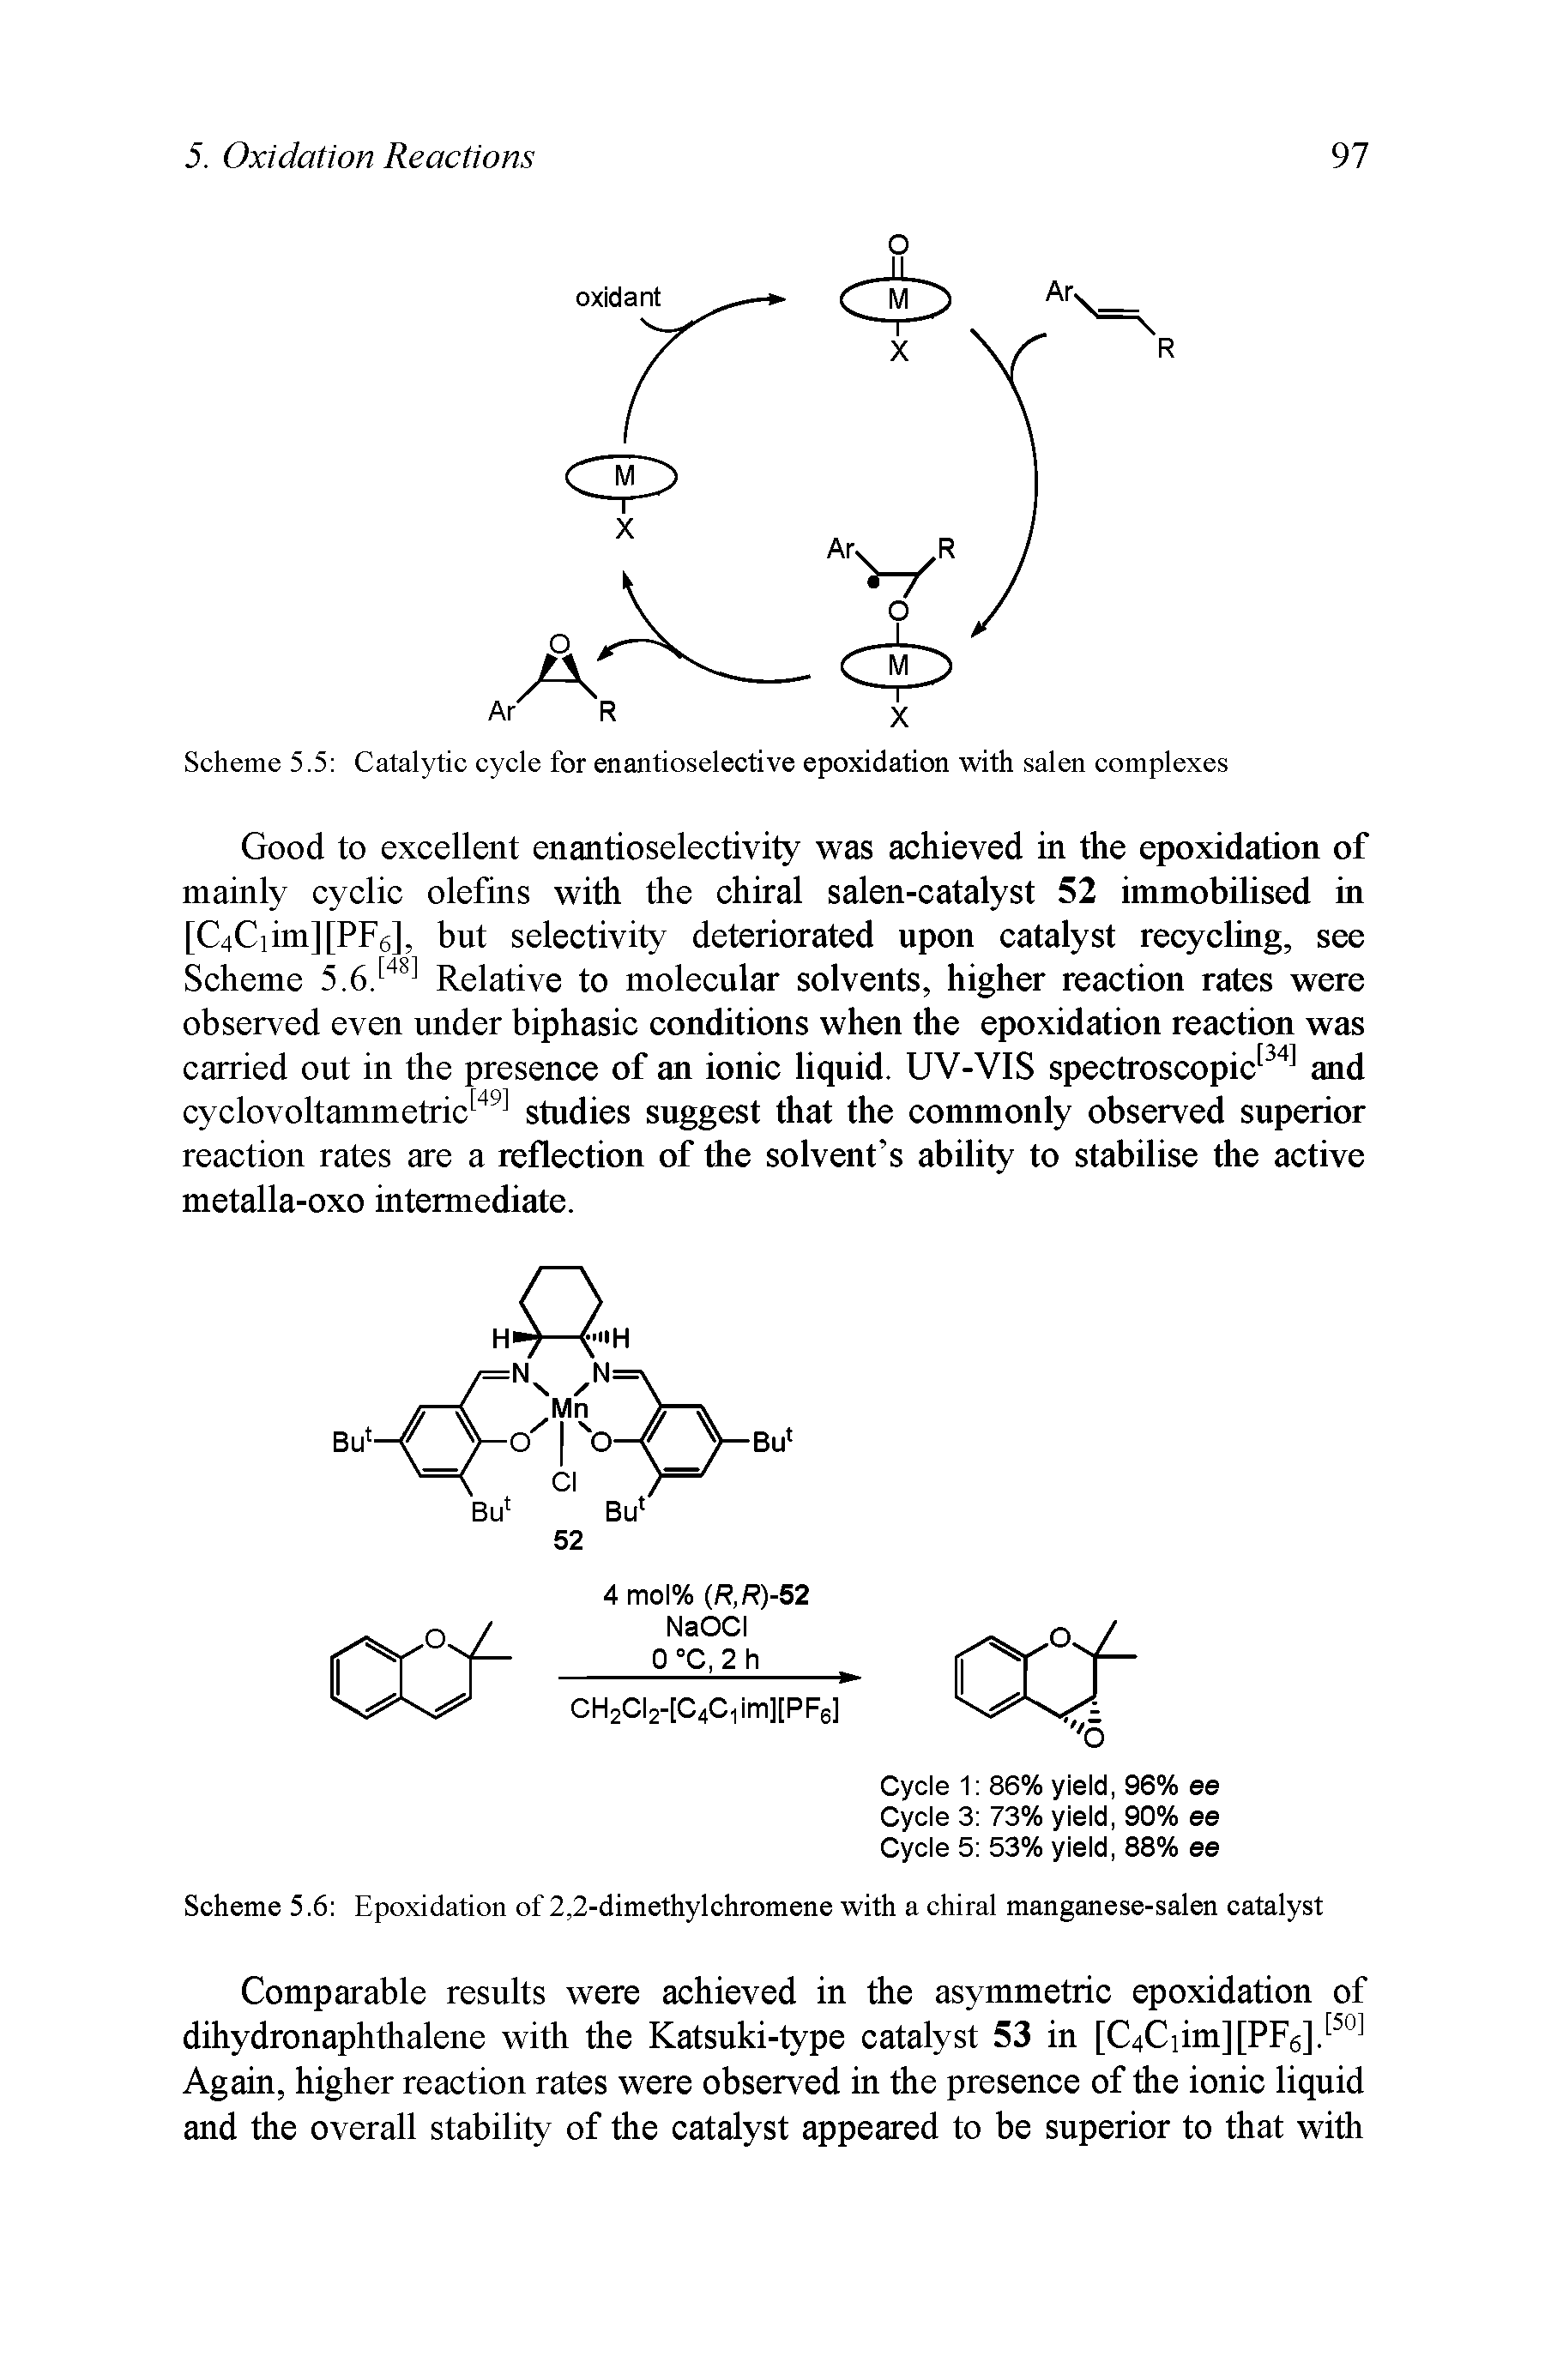 Scheme 5.6 Epoxidation of 2,2-dimethylchromene with a chiral manganese-salen catalyst...